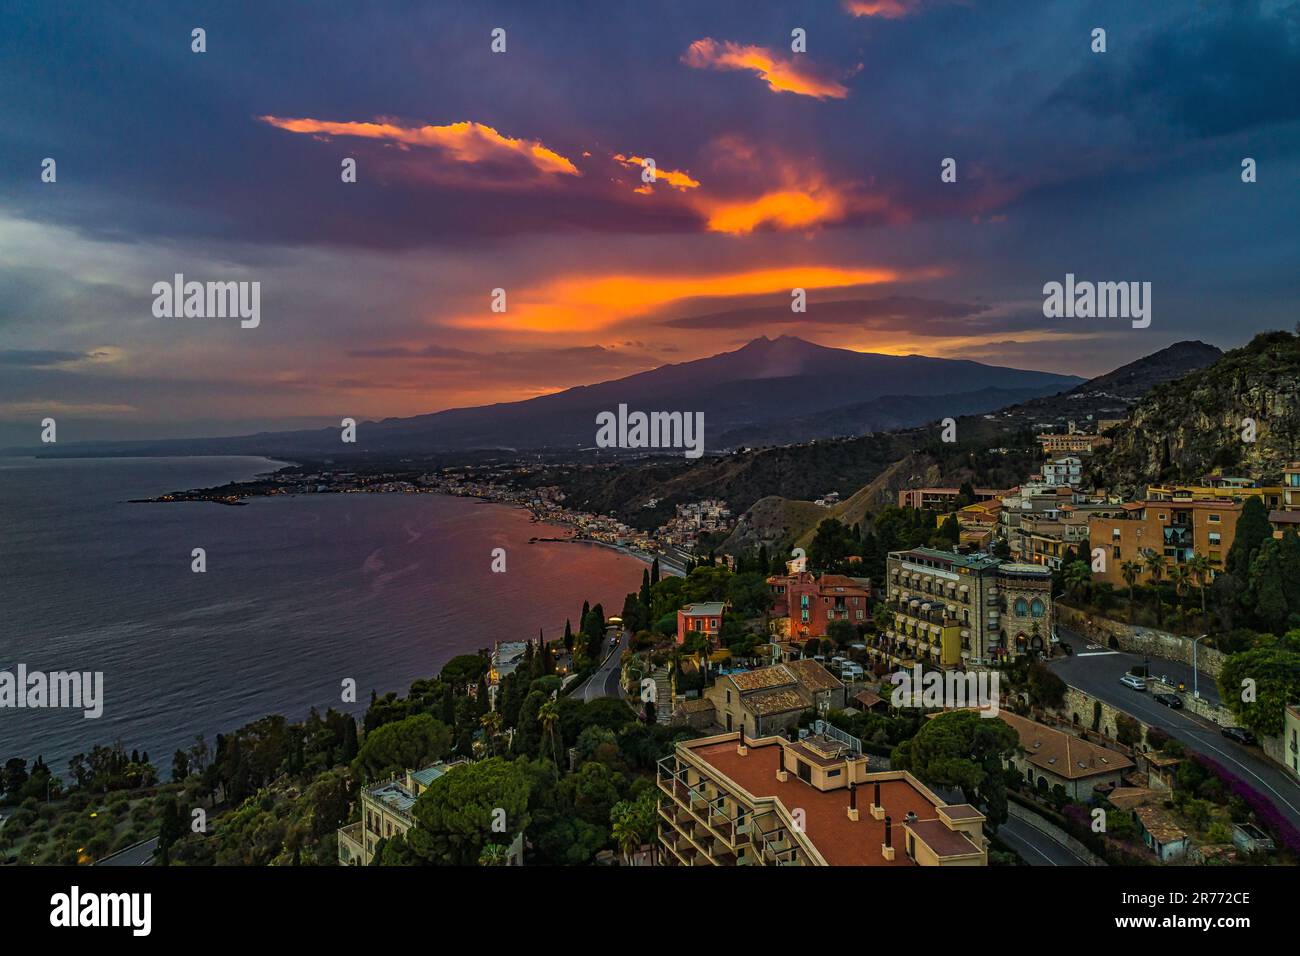 Tramonto sull'Etna, vista aerea della città turistica di Taormina. Taormina, provincia di Messina, Sicilia, Italia, Europa Foto Stock